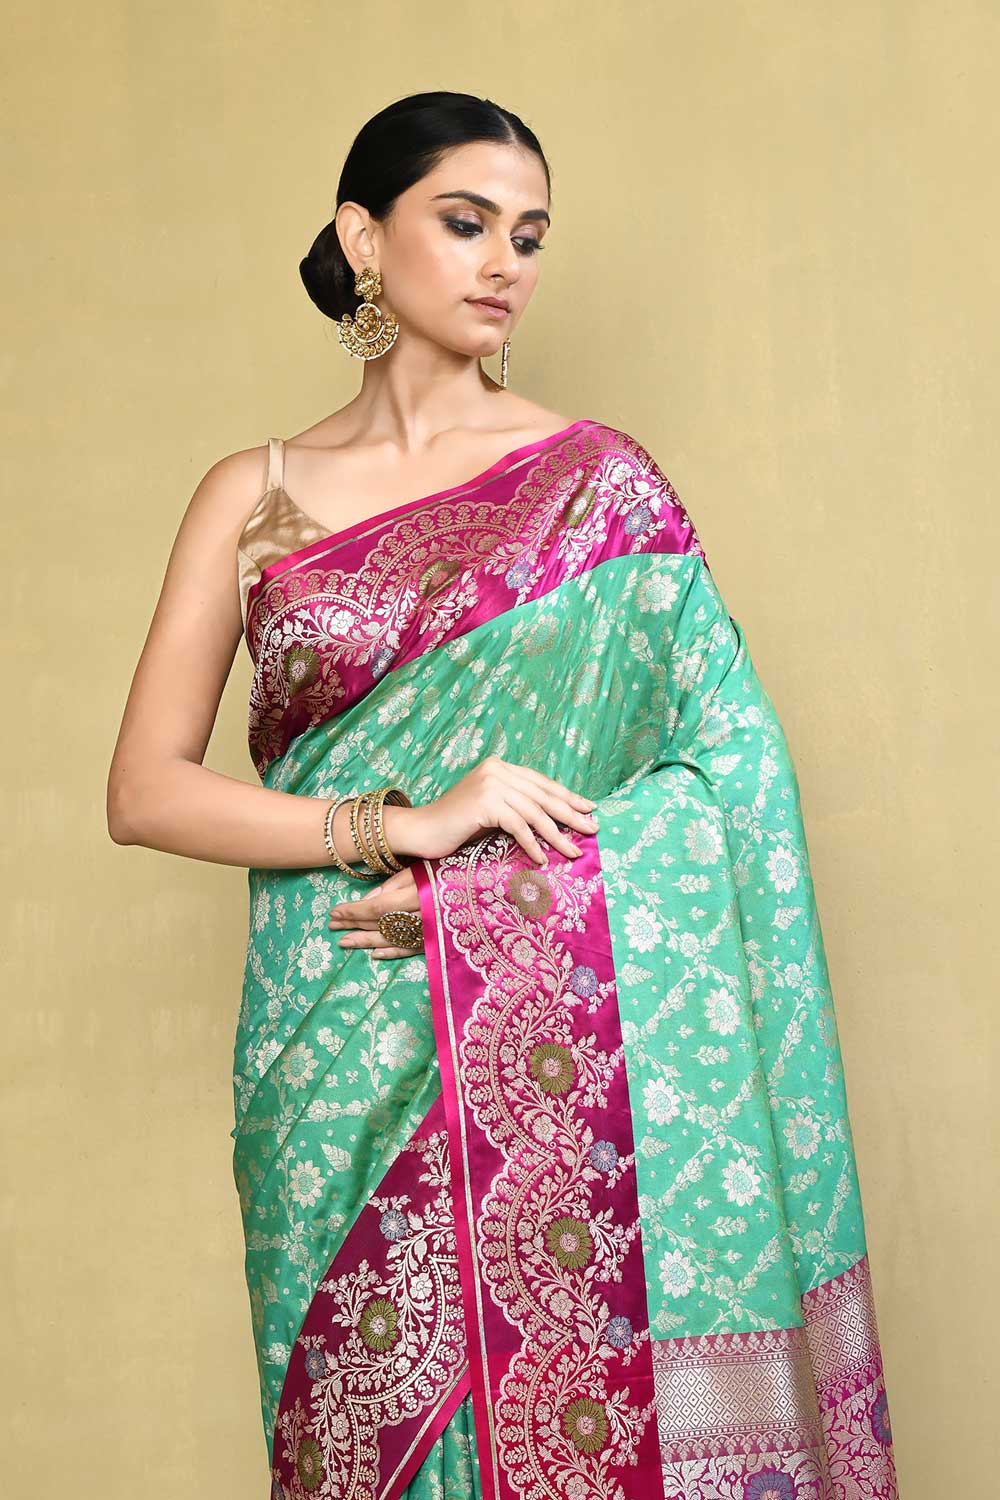 Mint Green - Magenta Banarasi Handloom saree with Contrast Meenakari Border